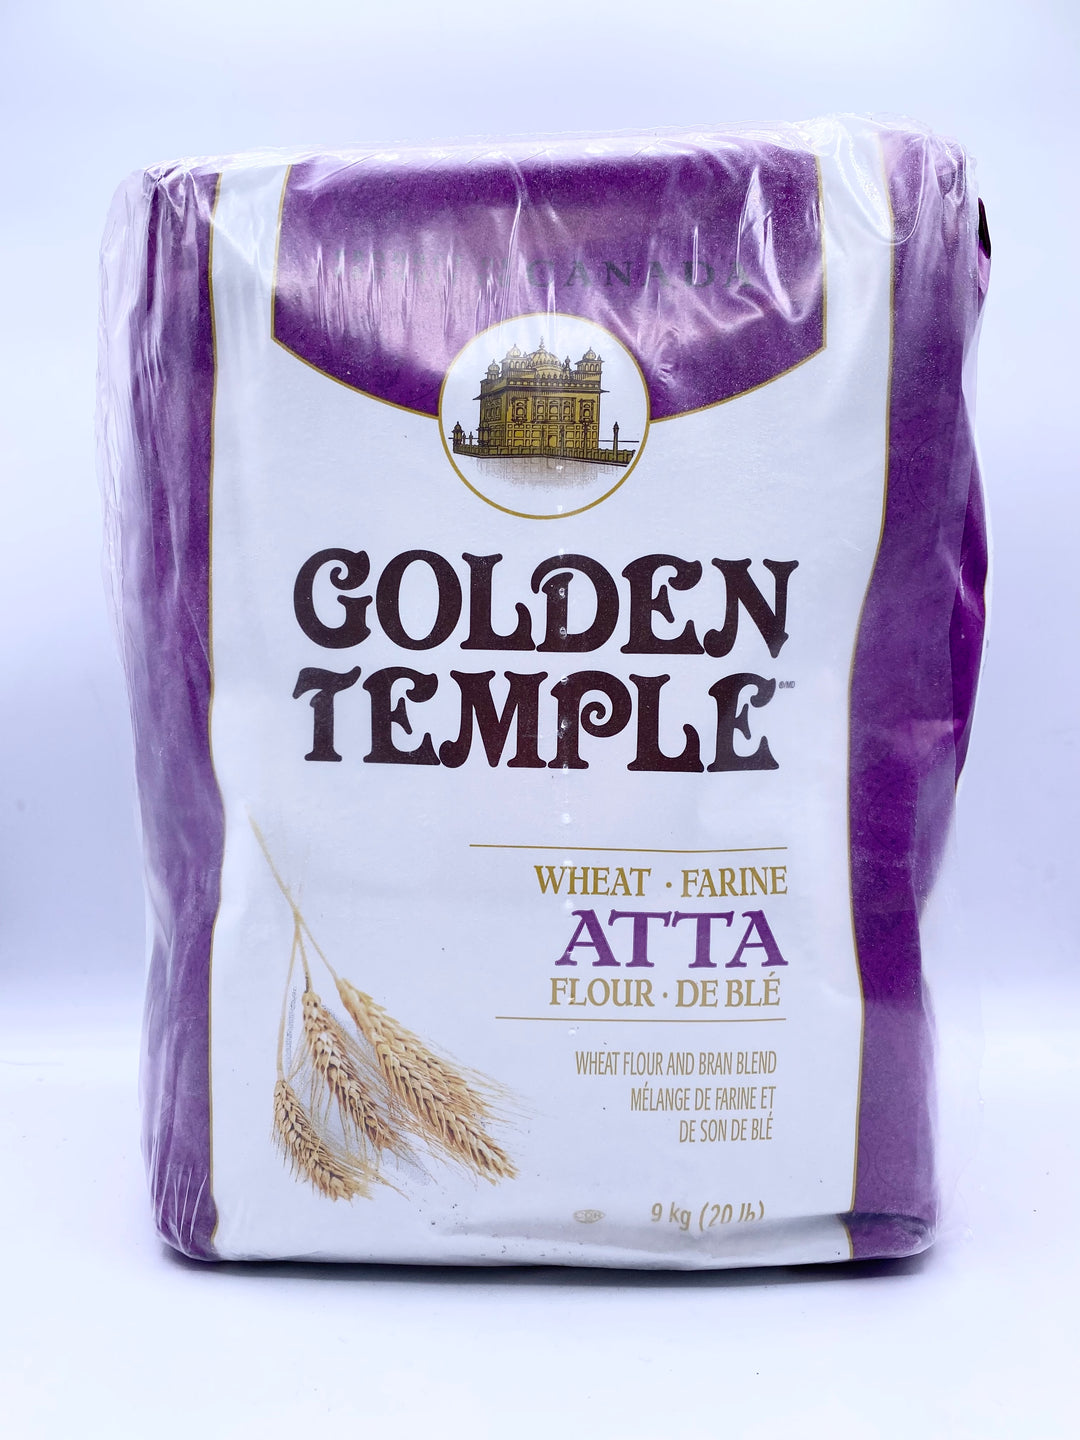 Golden Temple Wheat Atta Purple 20Lb 9Kg)